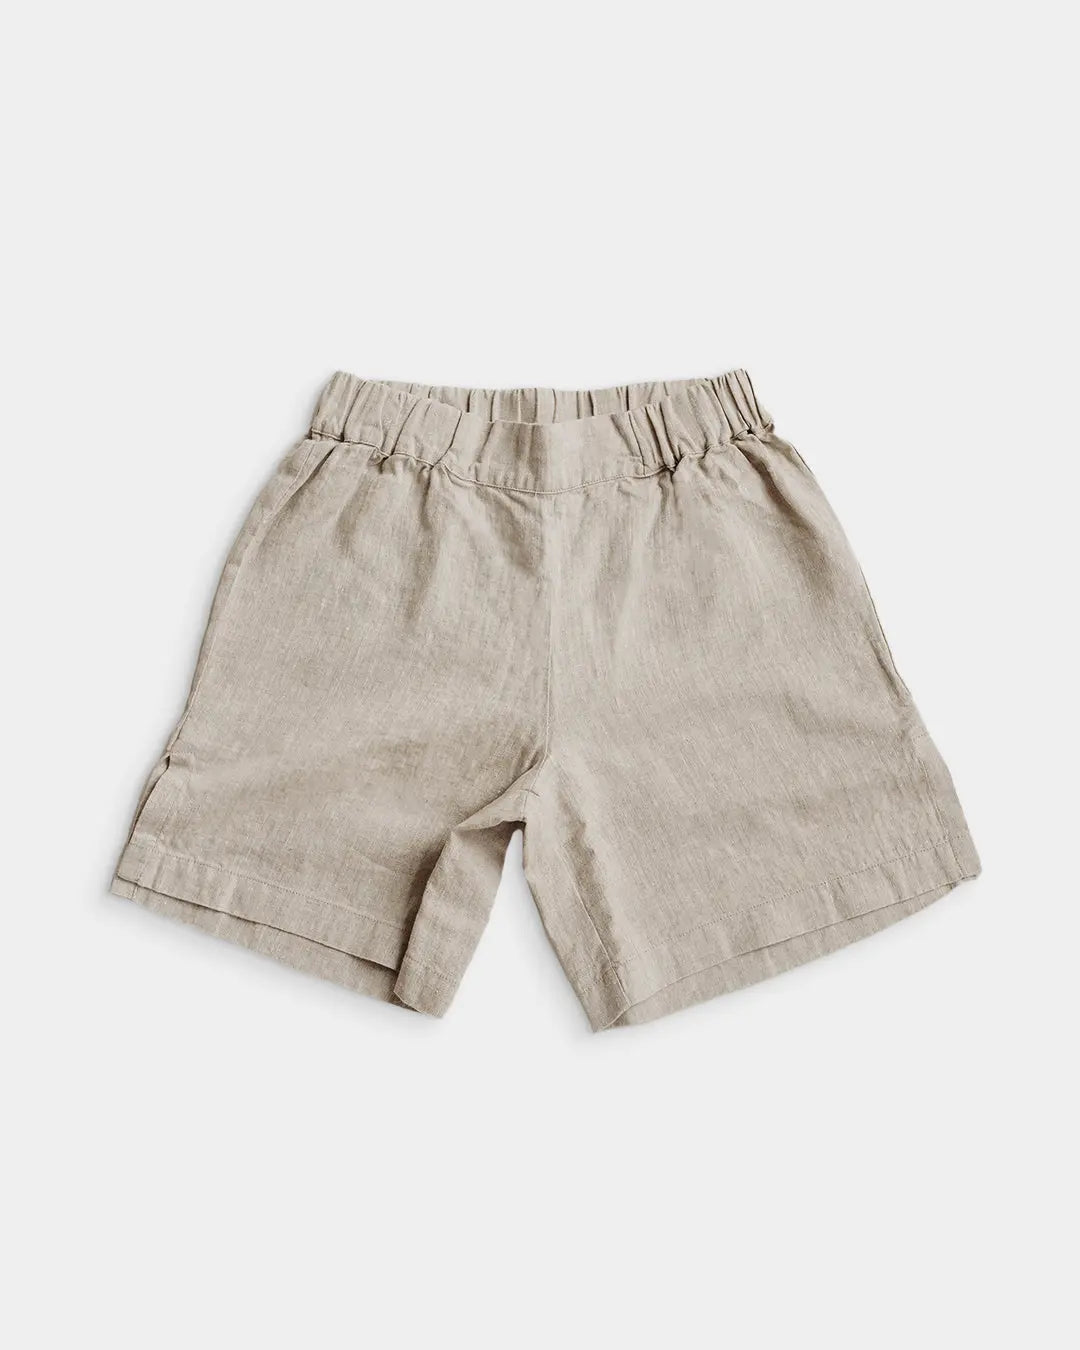 Linen Everyday Shorts - 100% European Flax Linen Q for Quinn™